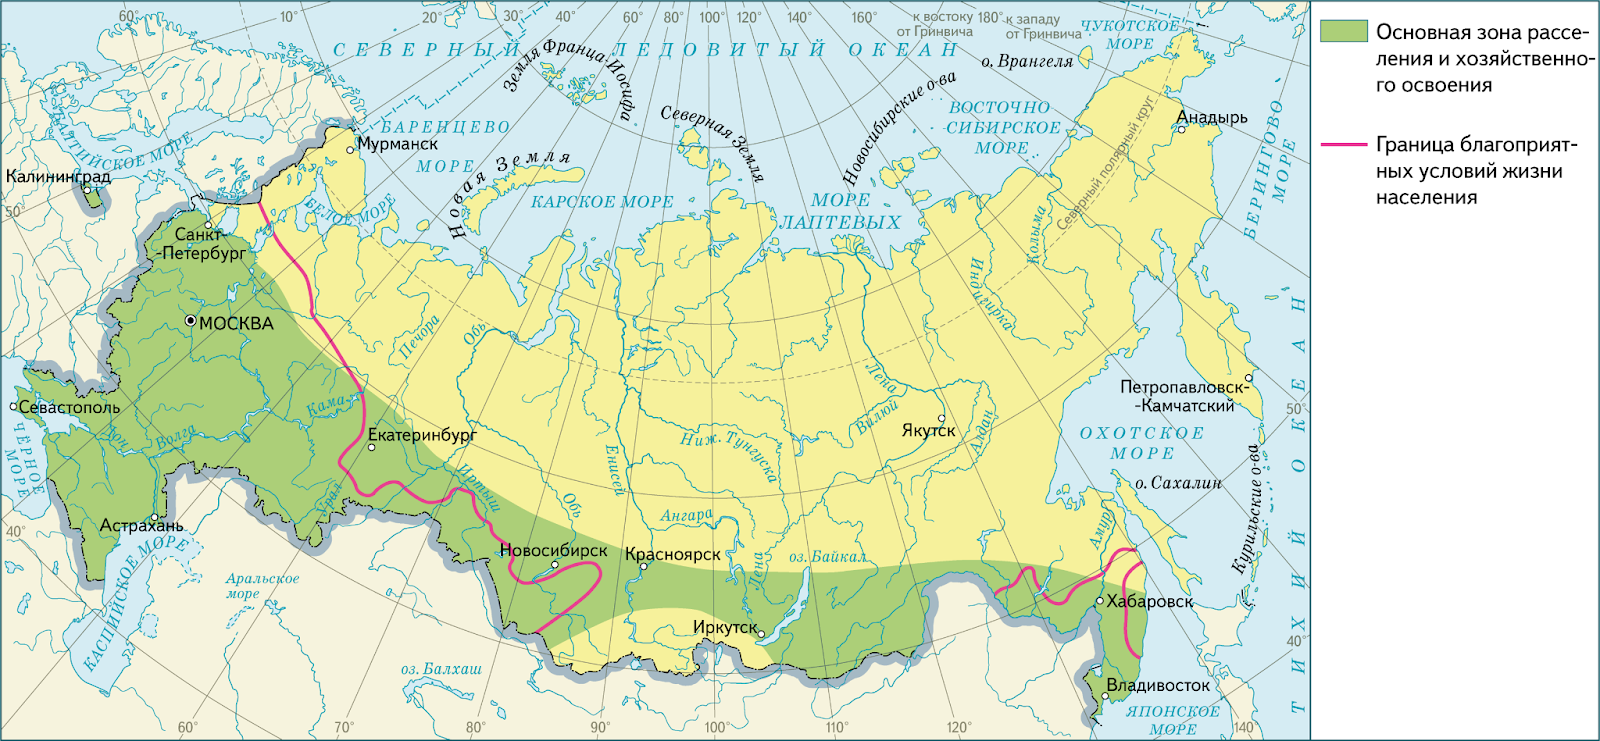 Зона севера занимает территории россии. Основная зона расселения России. Границы основной зоны расселения. Основная зона расселения населения. Зона основного расселения России на карте.